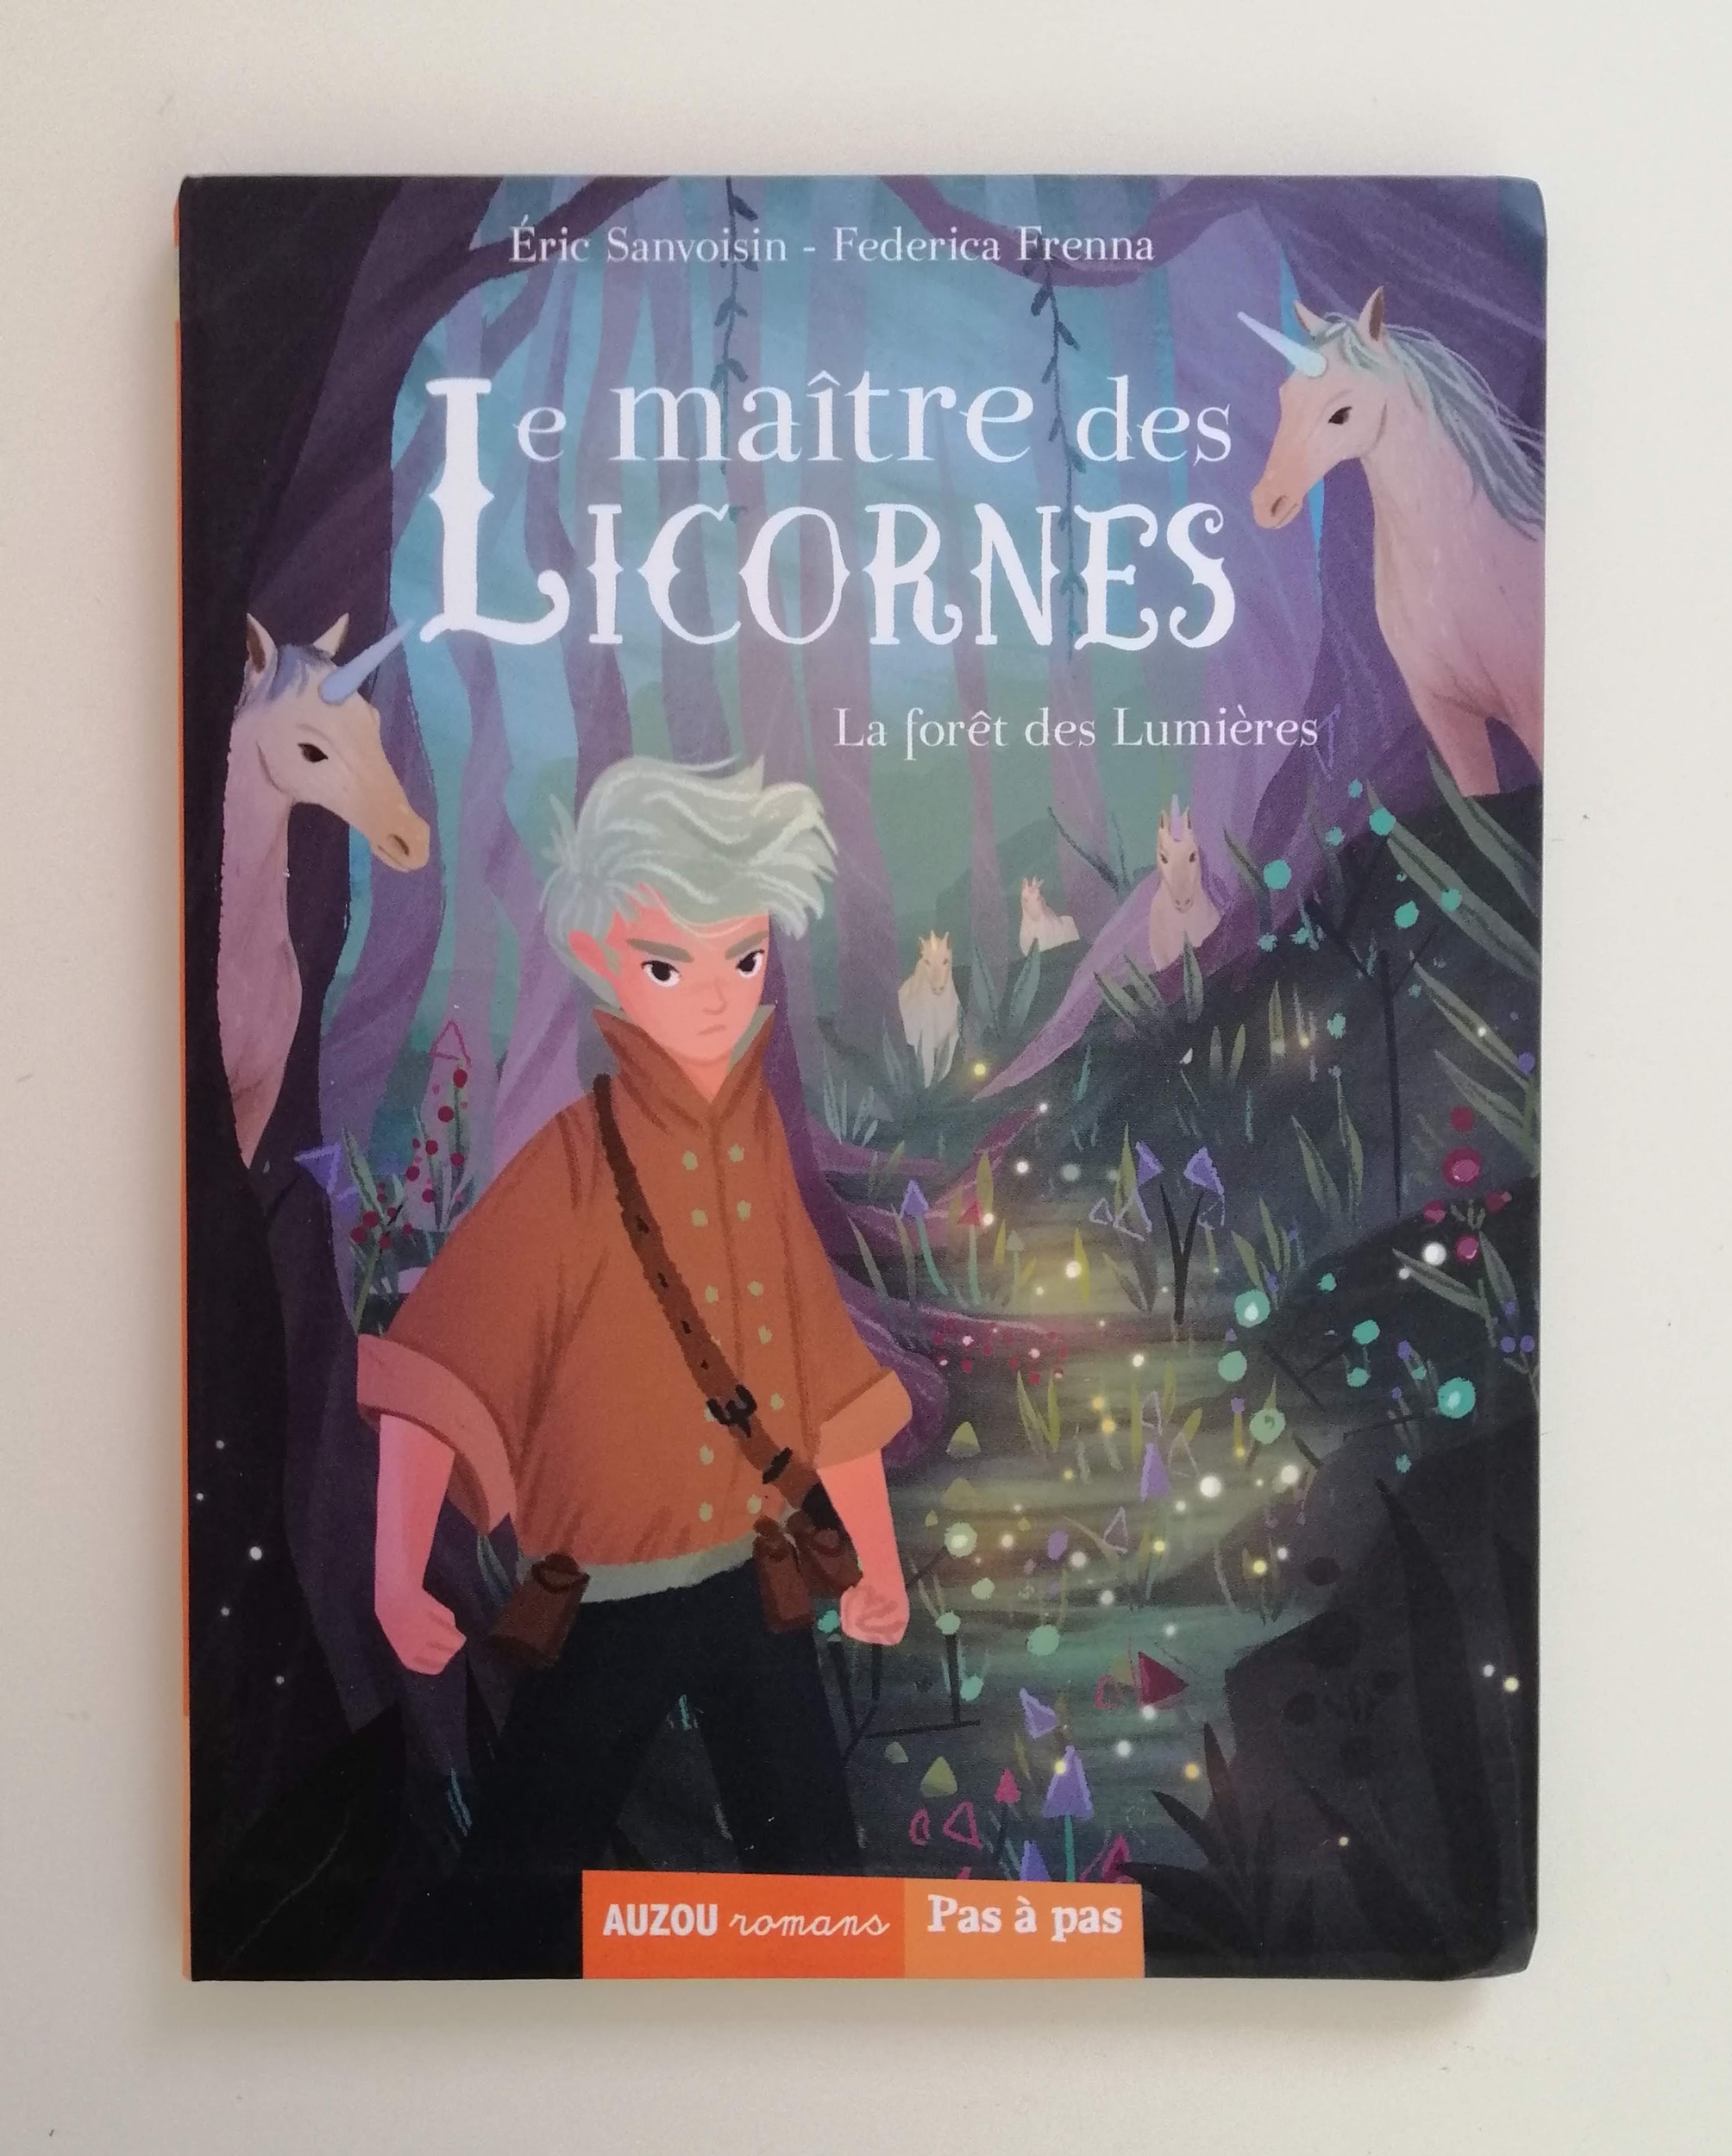 Le maître des licornes - La forêt des Lumières - Éric Sanvoisin - Federica Frenna - Livre poche - Auzou - LBA - I